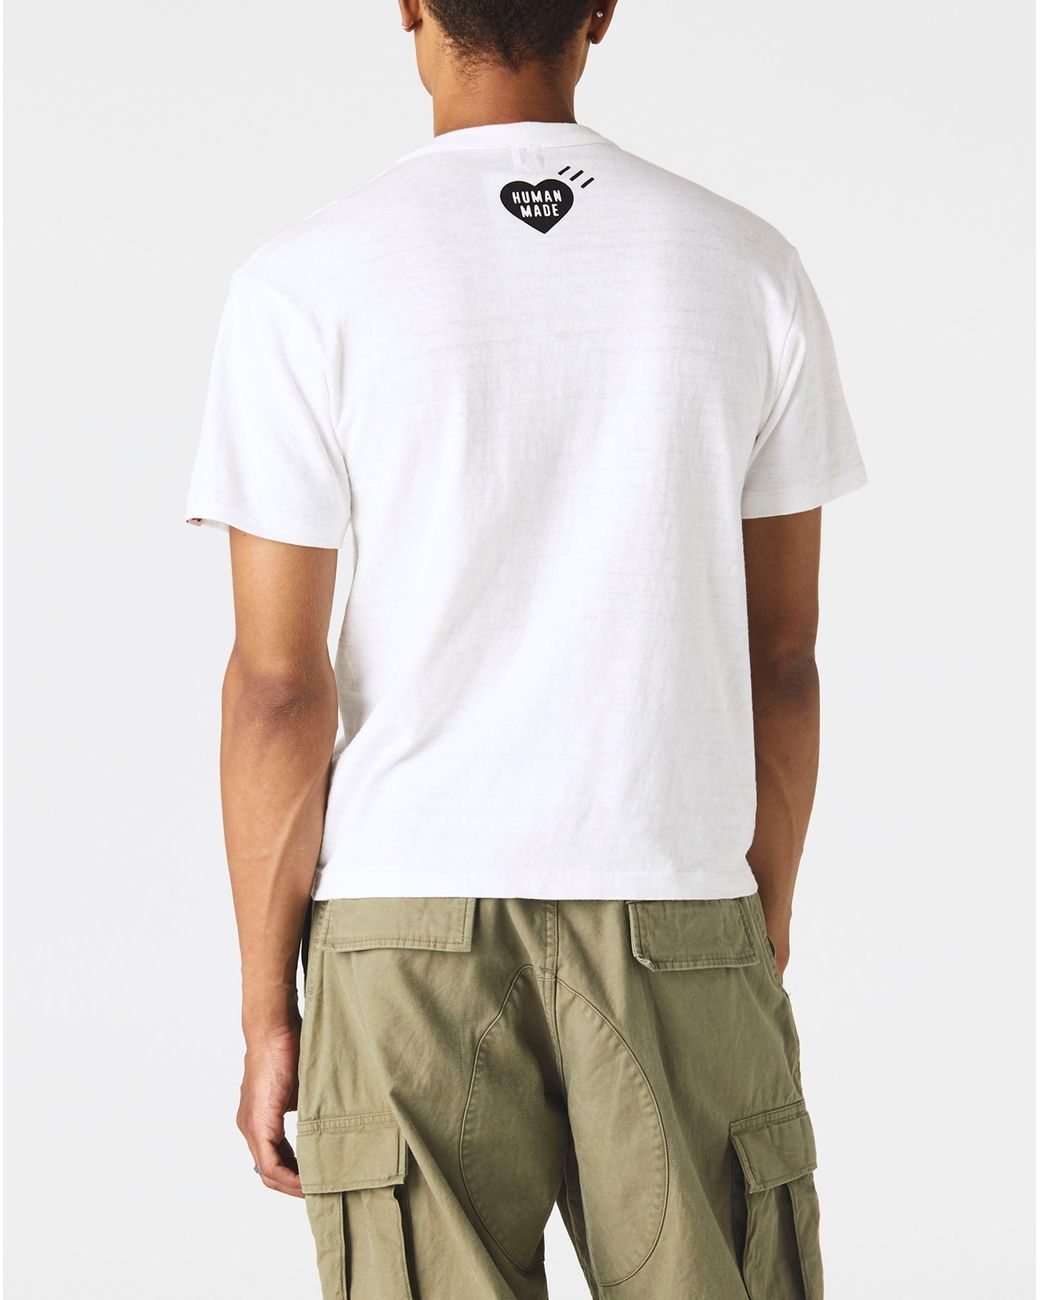 30％割引ブラック系,XL(LL)【海外限定】 HUMAN MADE Tシャツ T-SHIRT 